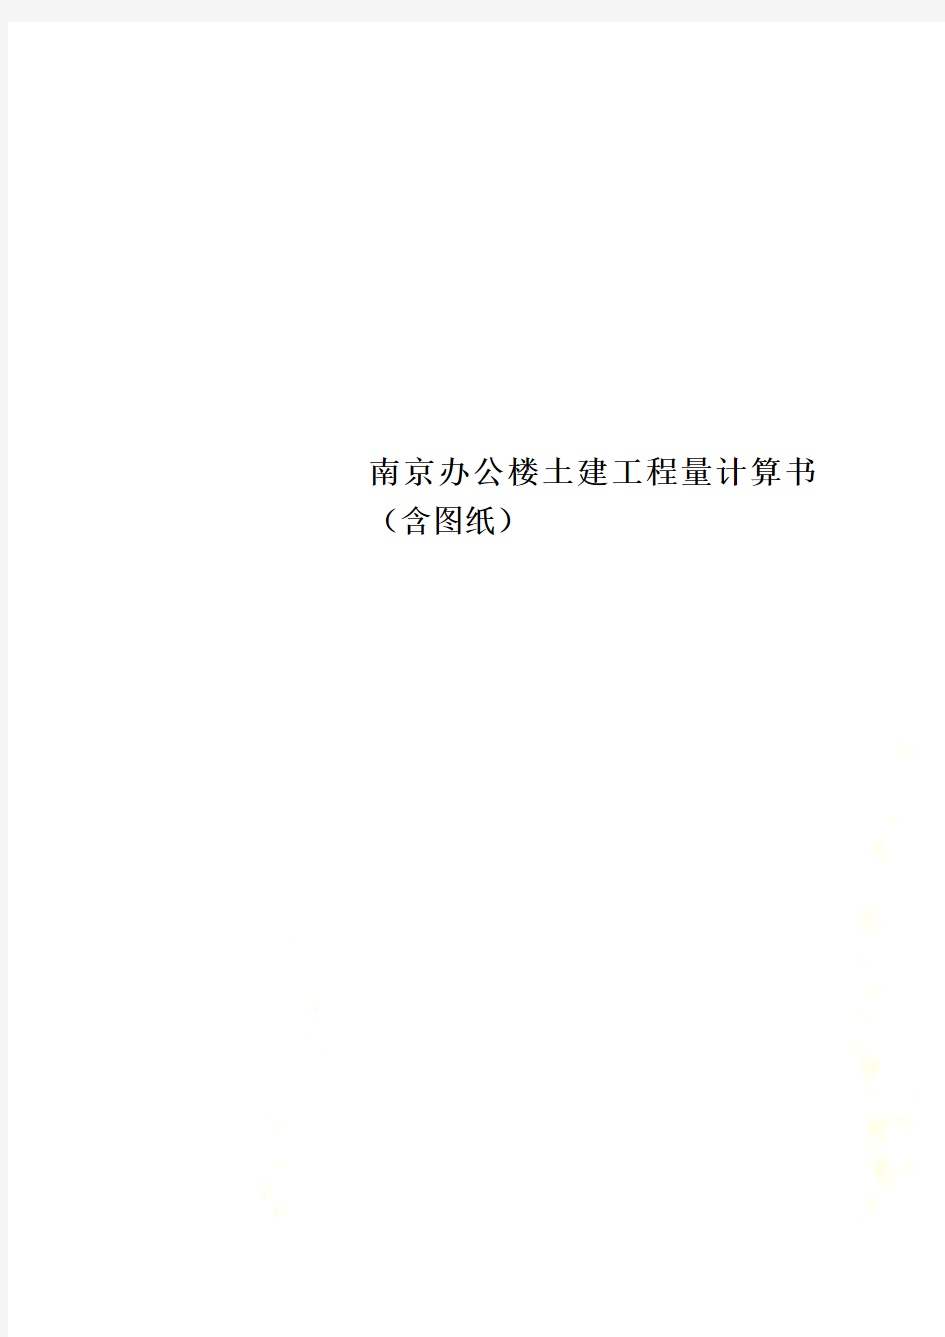 南京办公楼土建工程量计算书(含图纸)